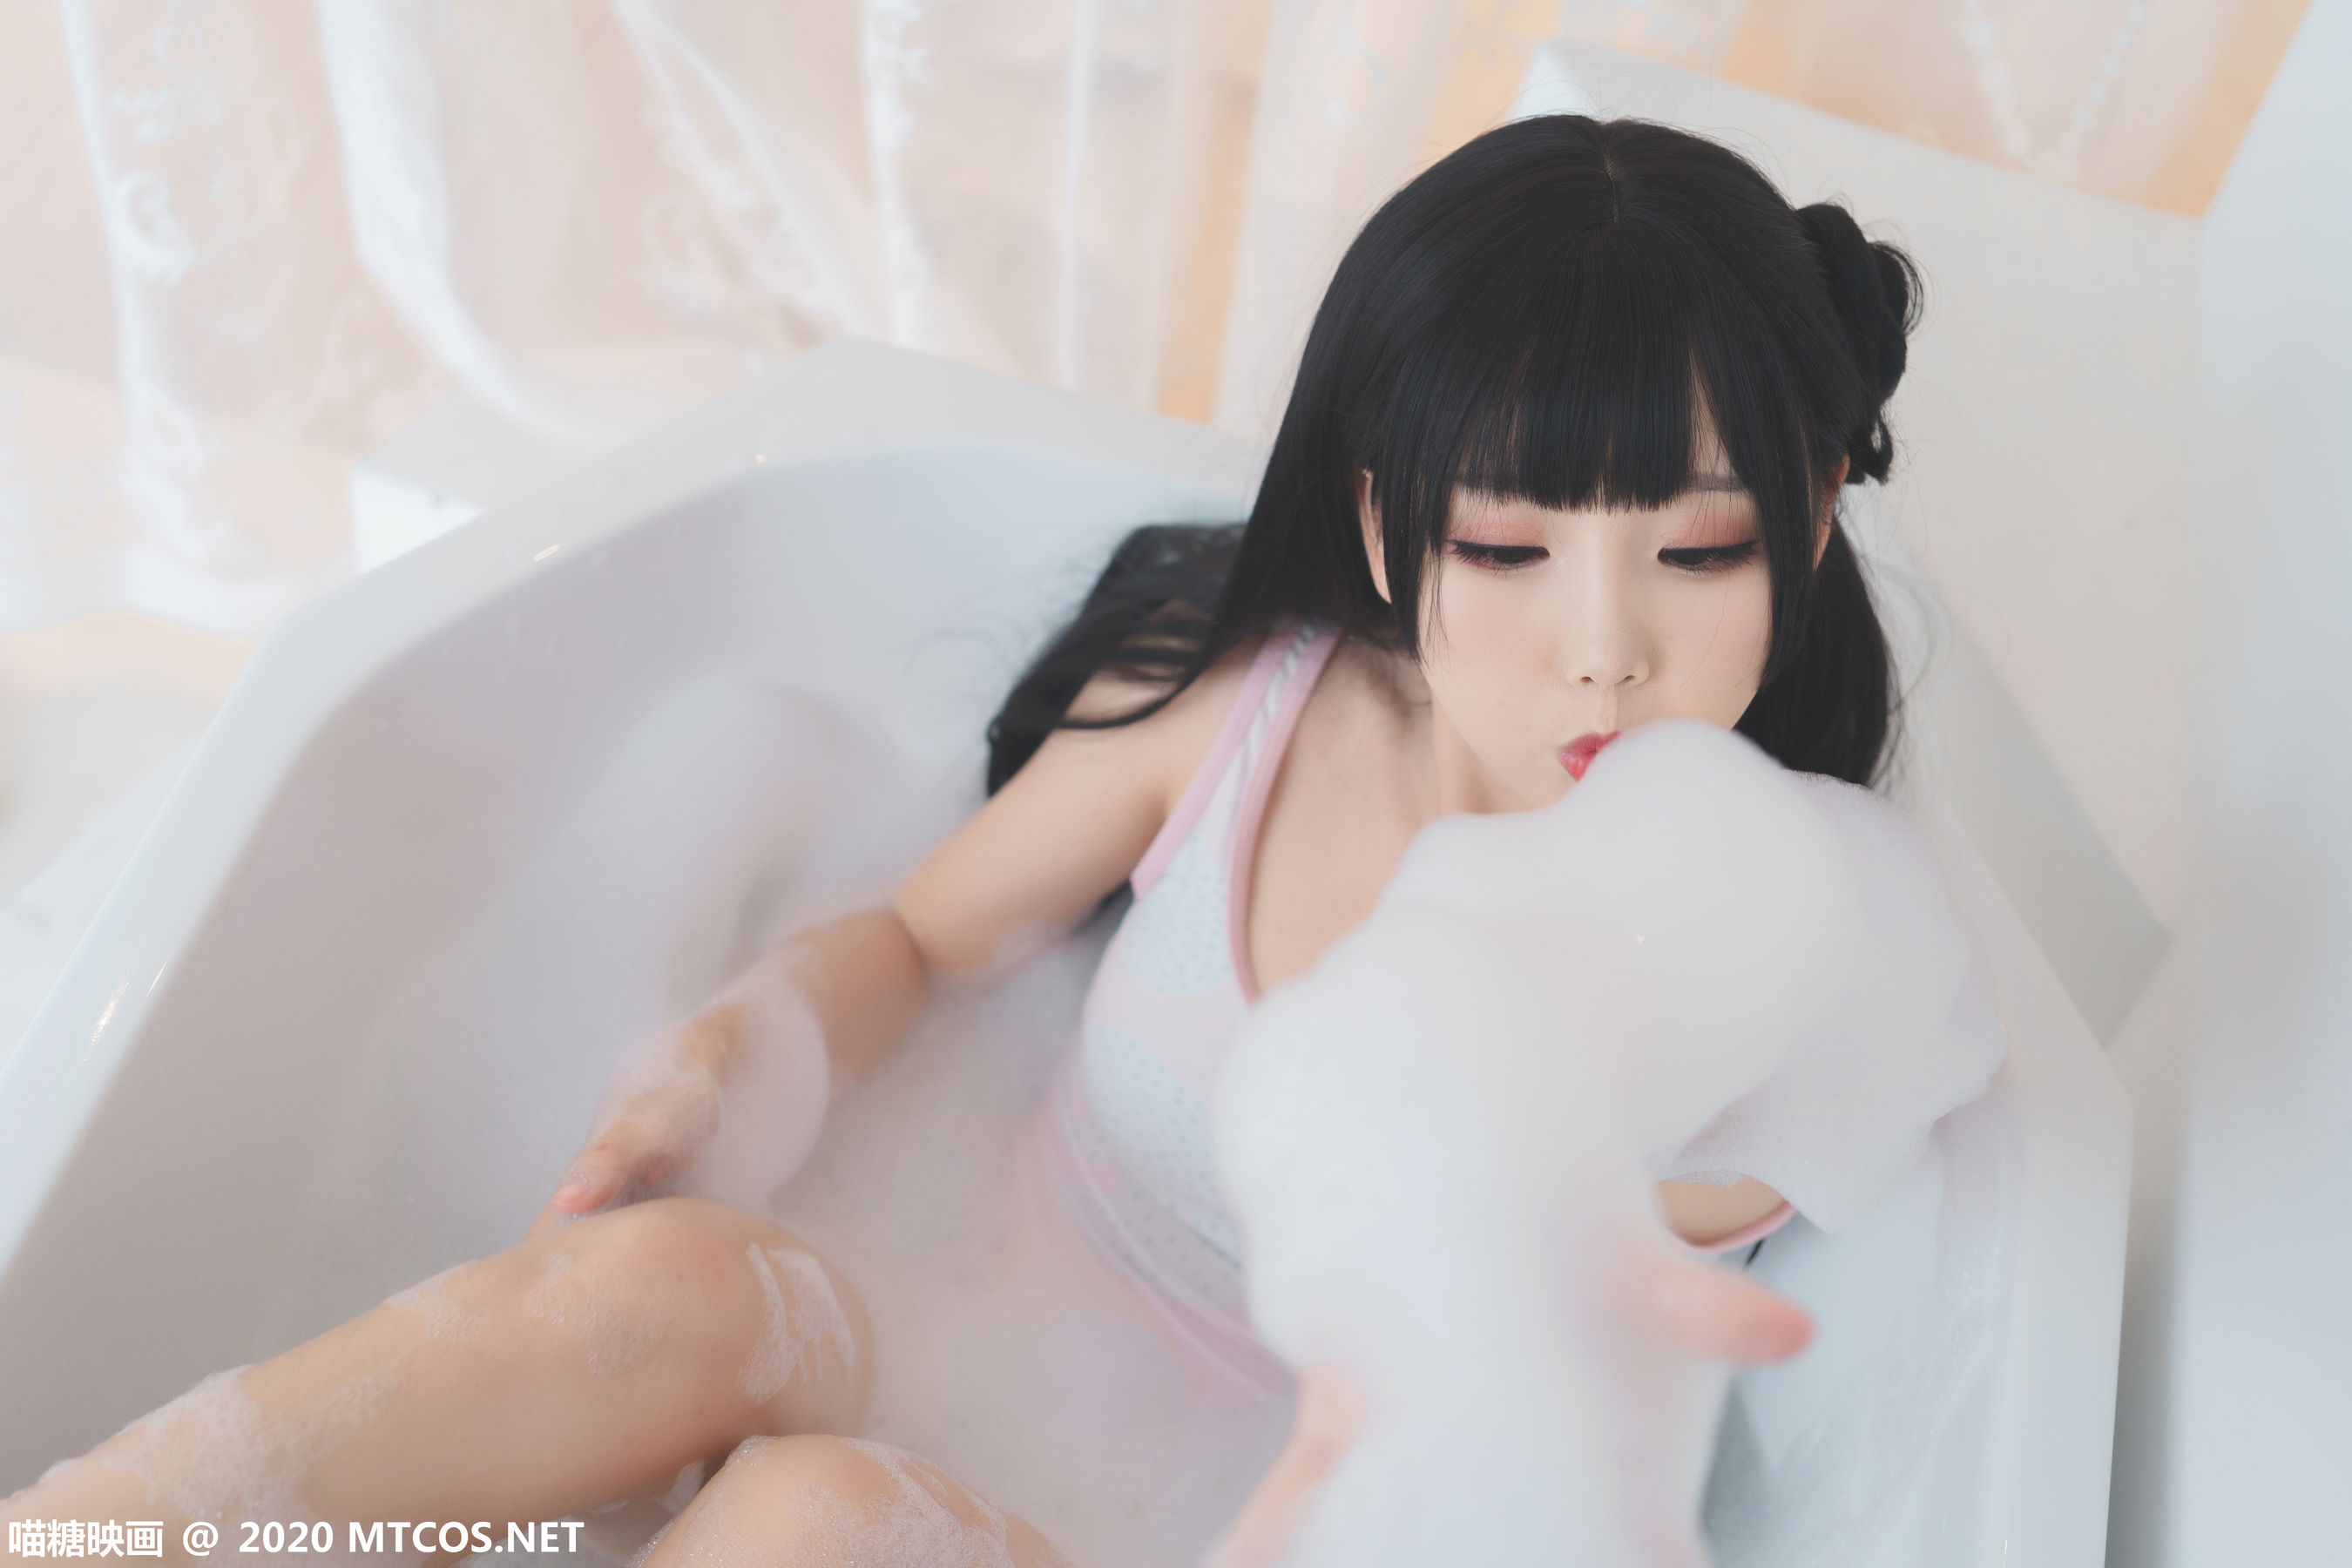 [糖] Vol.167 “Bathtub Bubble” Photo Collection